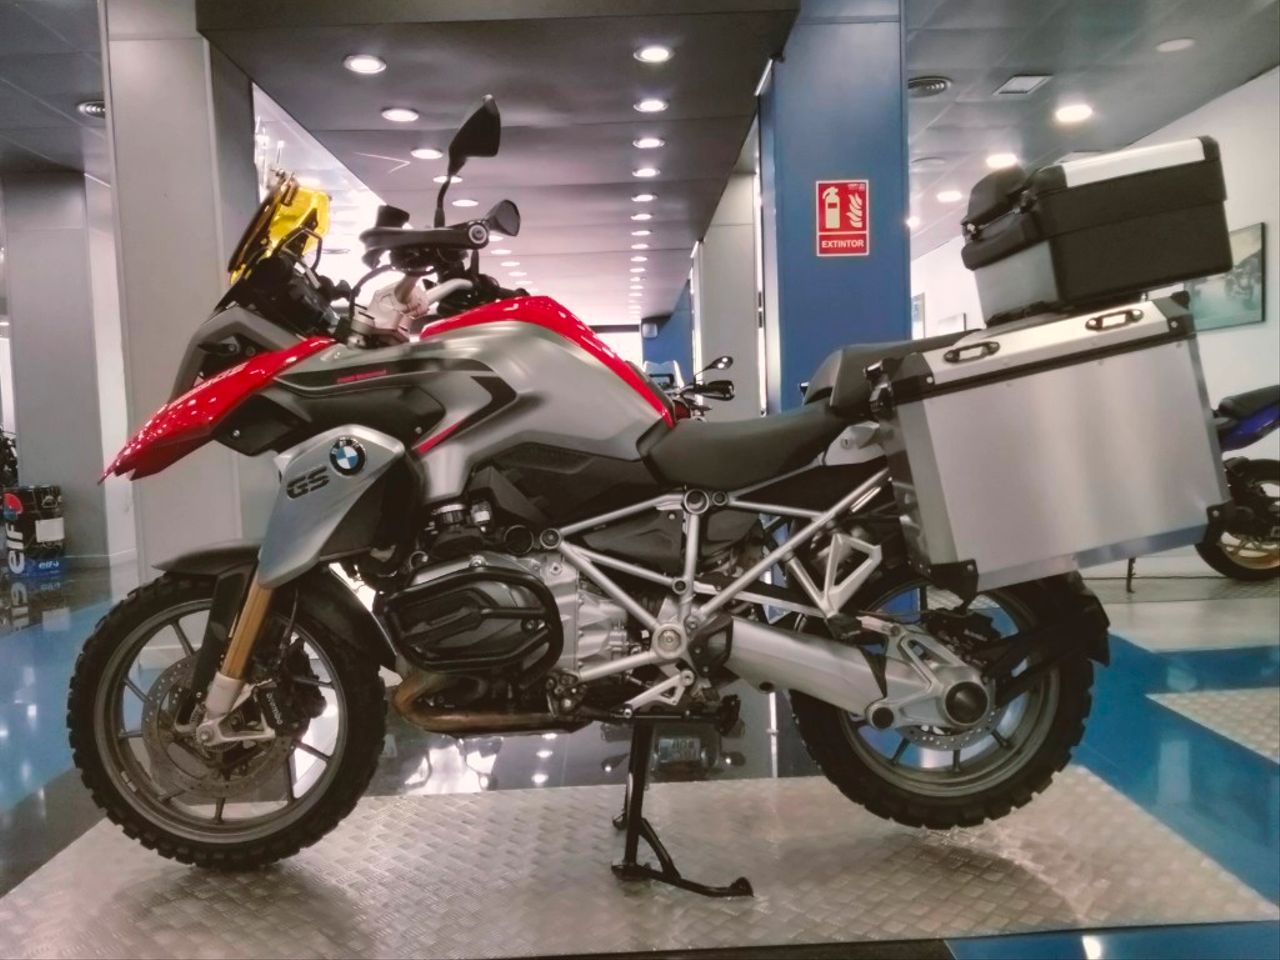 Moto BMW R 1200 GS 98CV de seguna mano del año 2014 en Málaga